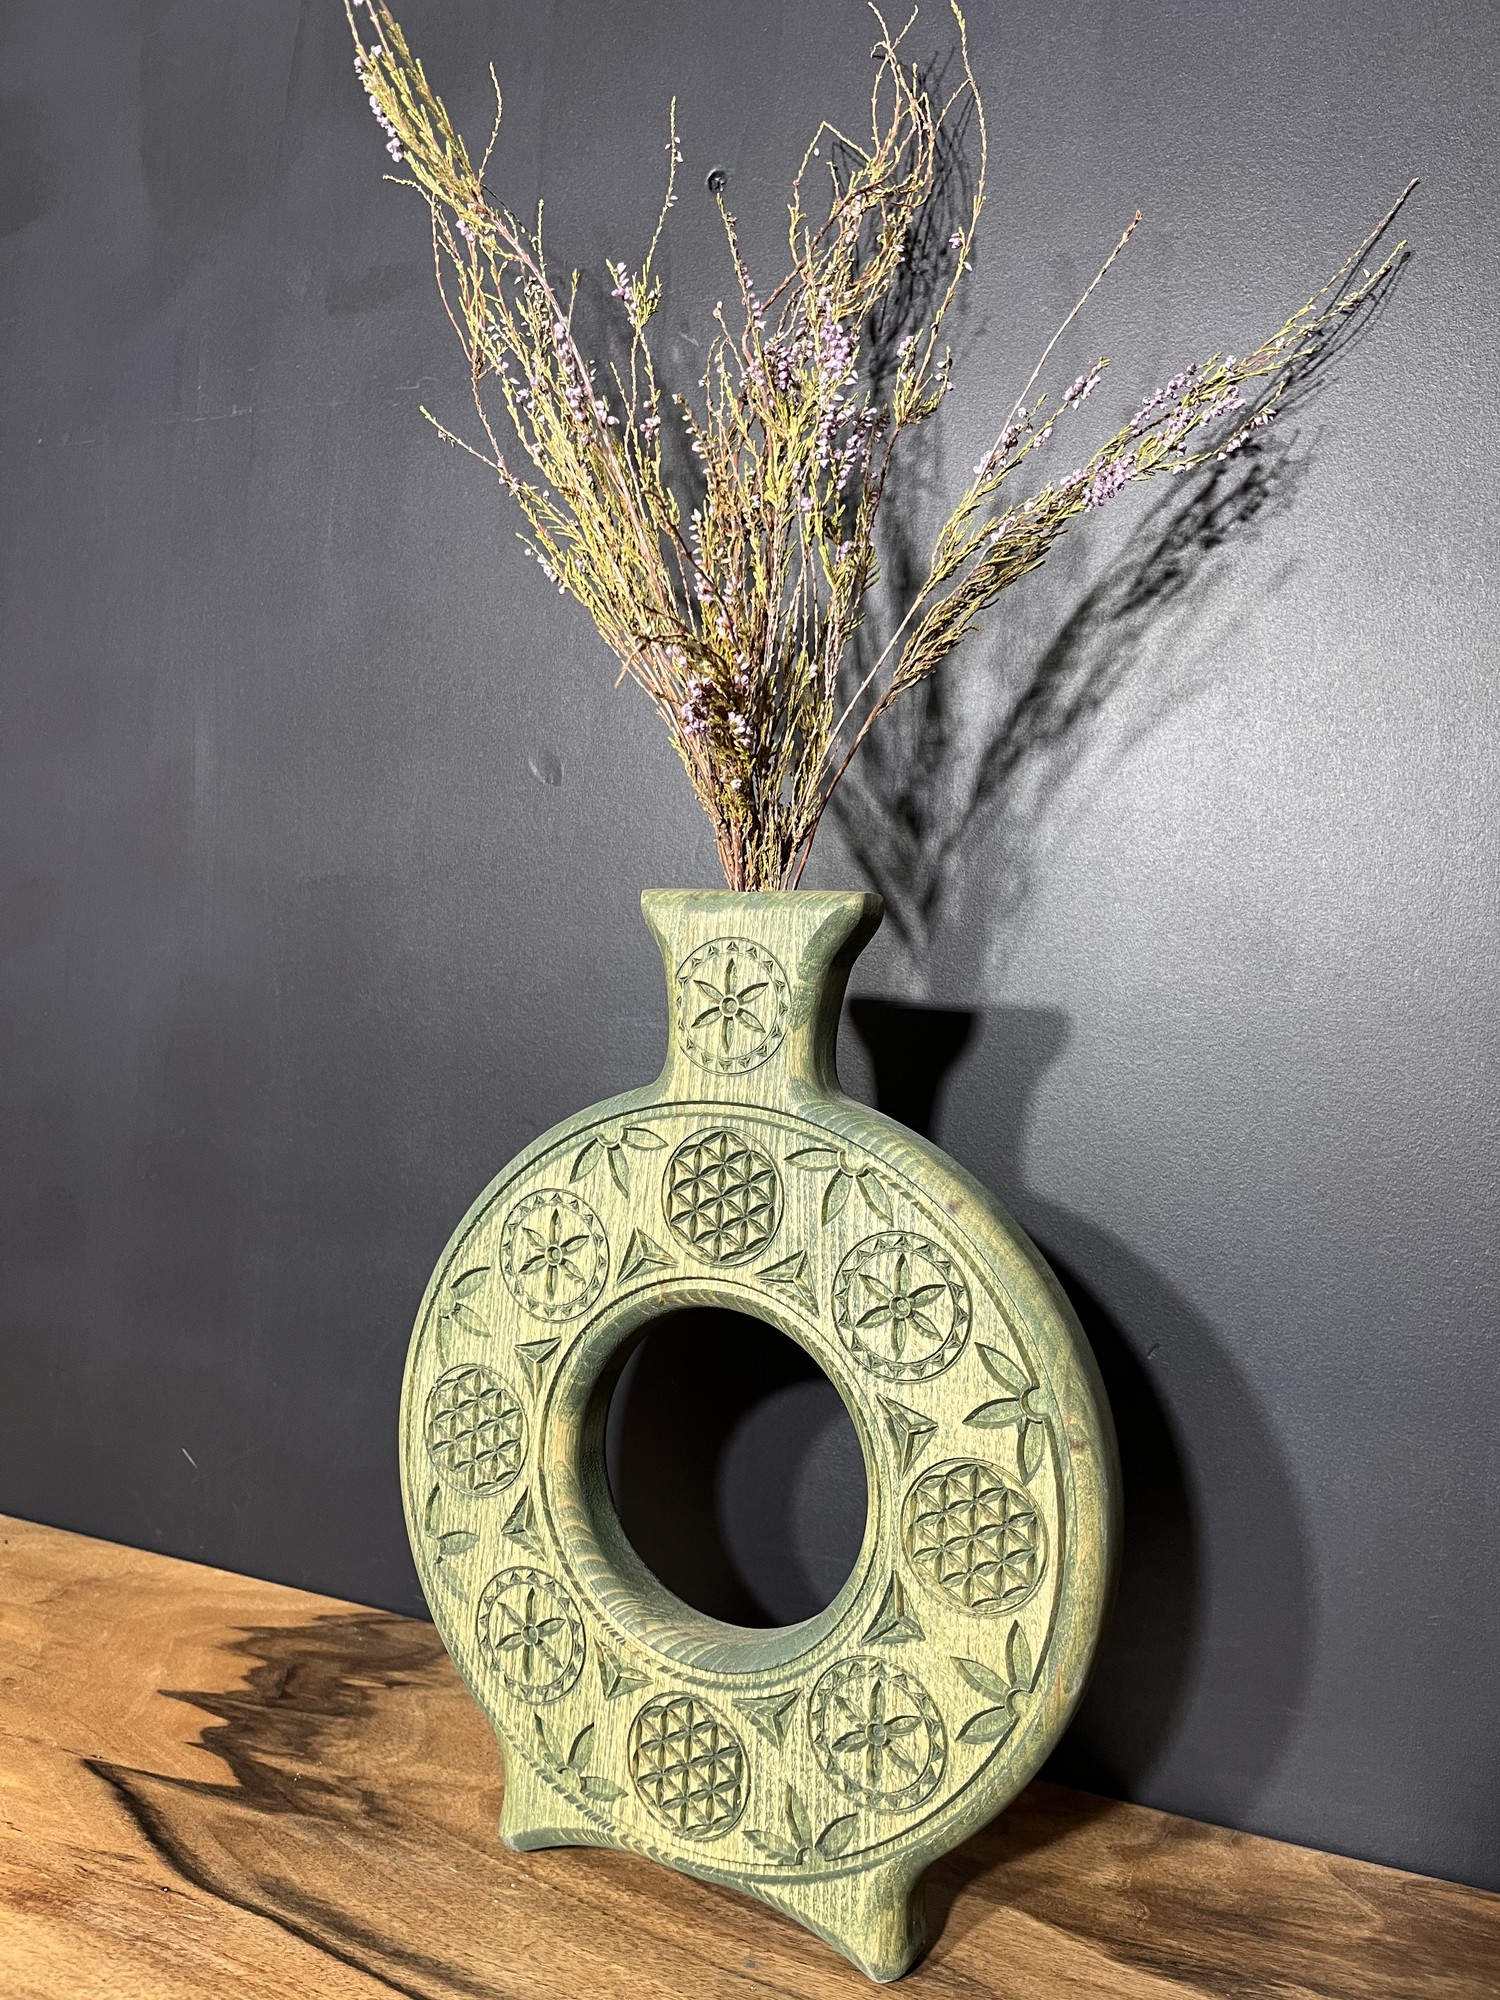 Design vase for dried flowers Dazhbog